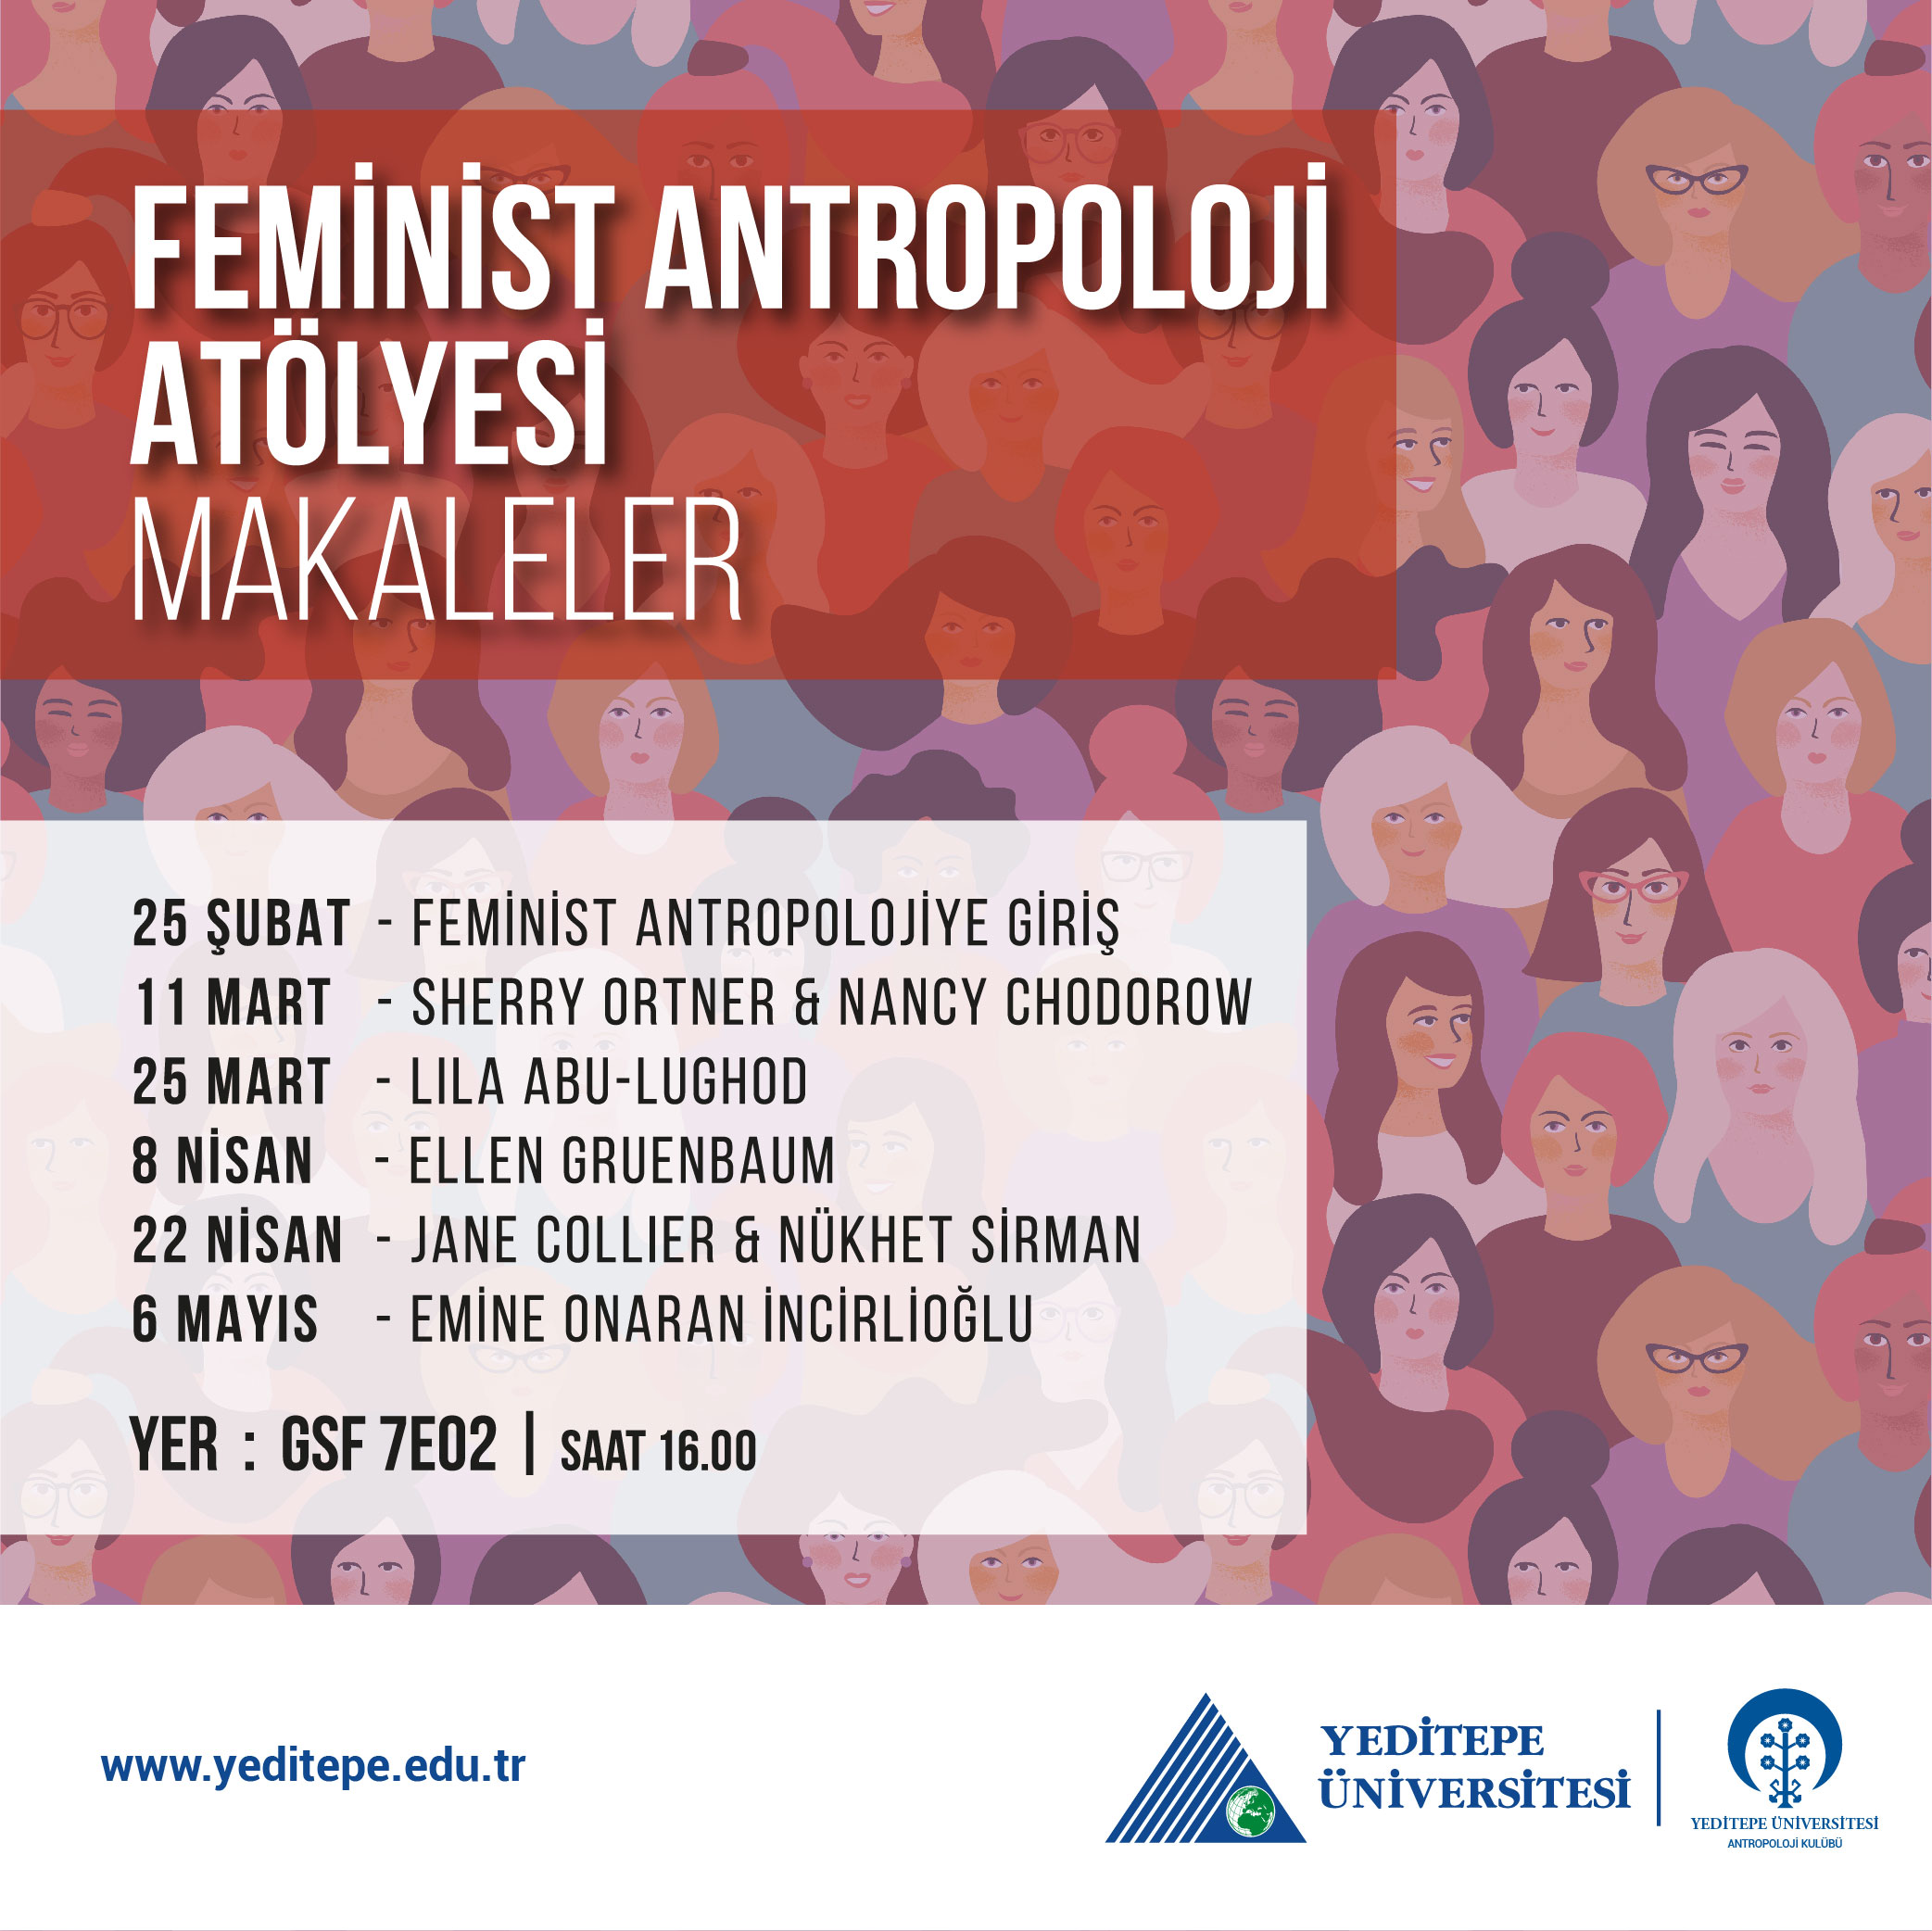 Feminist Antropoloji Atölyesi | Makaleler